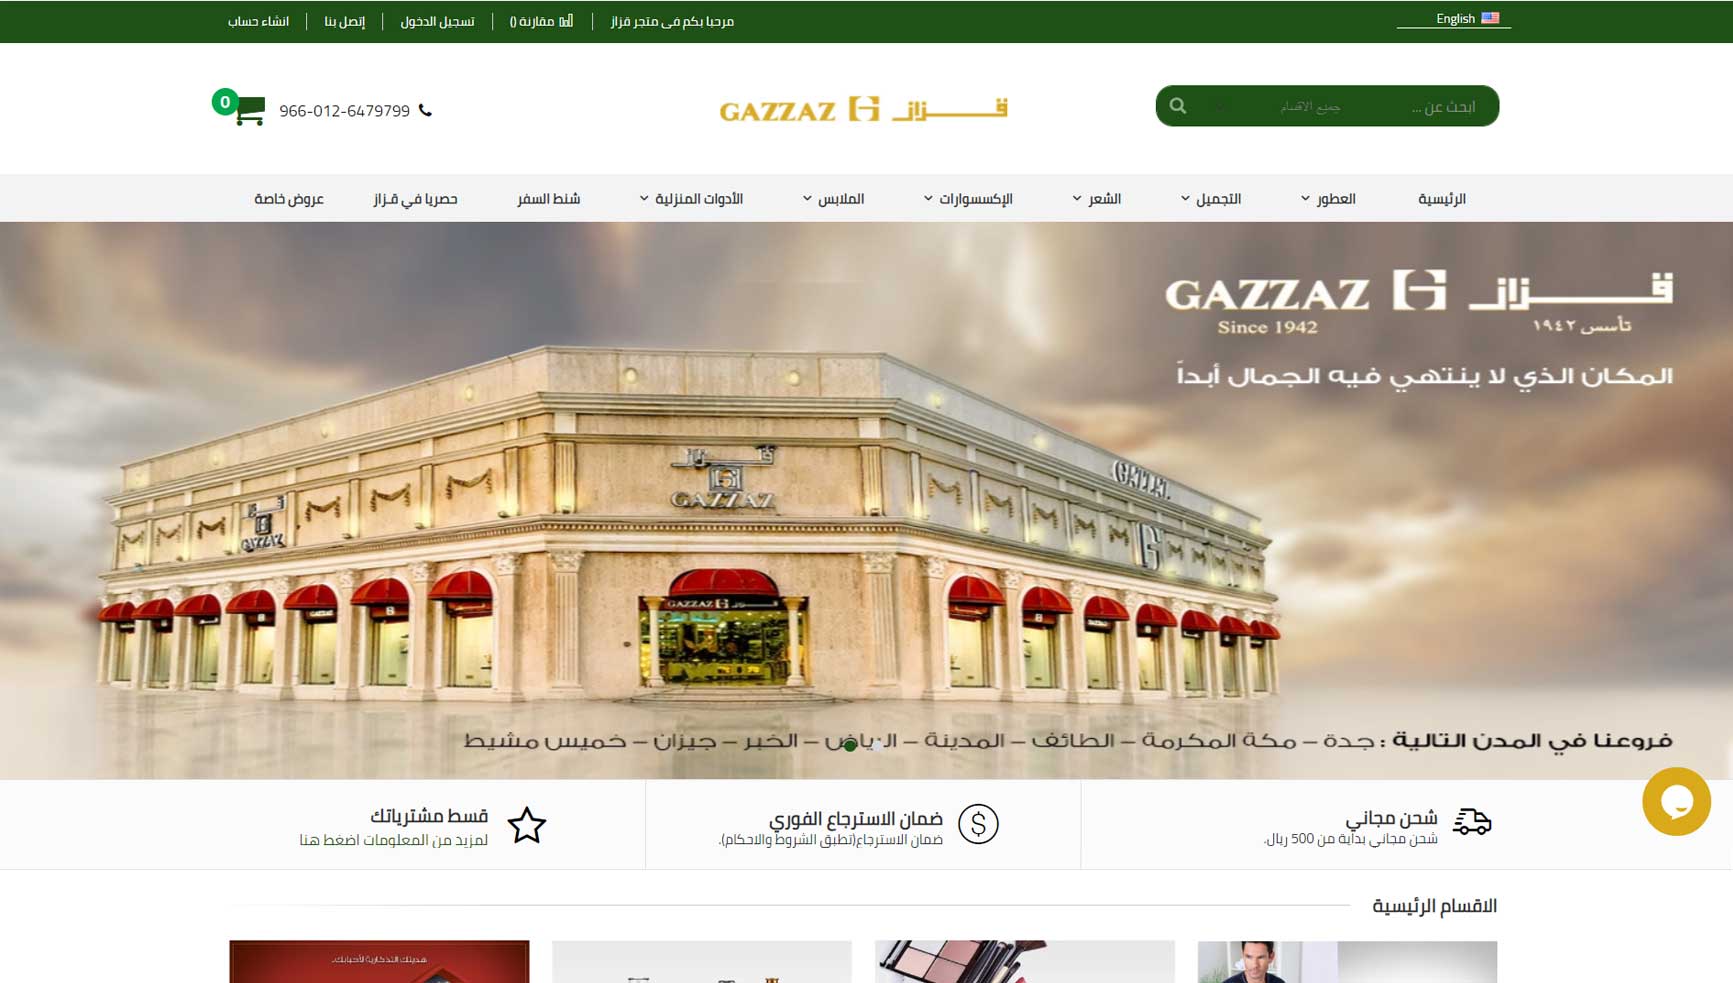 سلسلة متاجر قزاز افضل شركة تصميم مواقع انترنت فى السعودية و انشاء